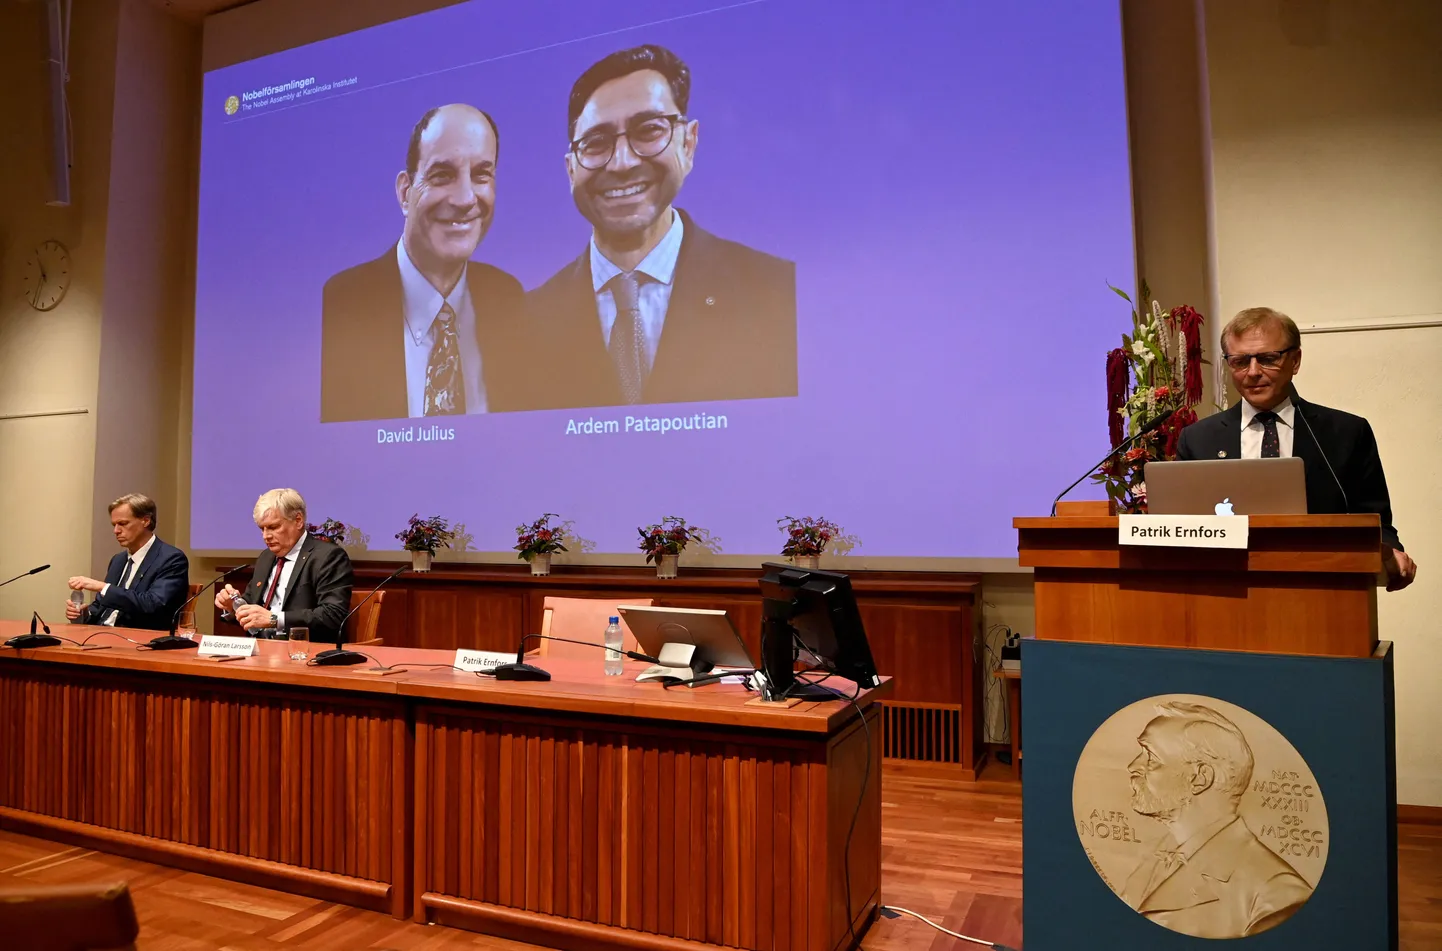 Лауреатами Нобелевского премии по физиологии и медицине 2021 года стали американцы Дэвид Джулиус и Ардем Патапутян.